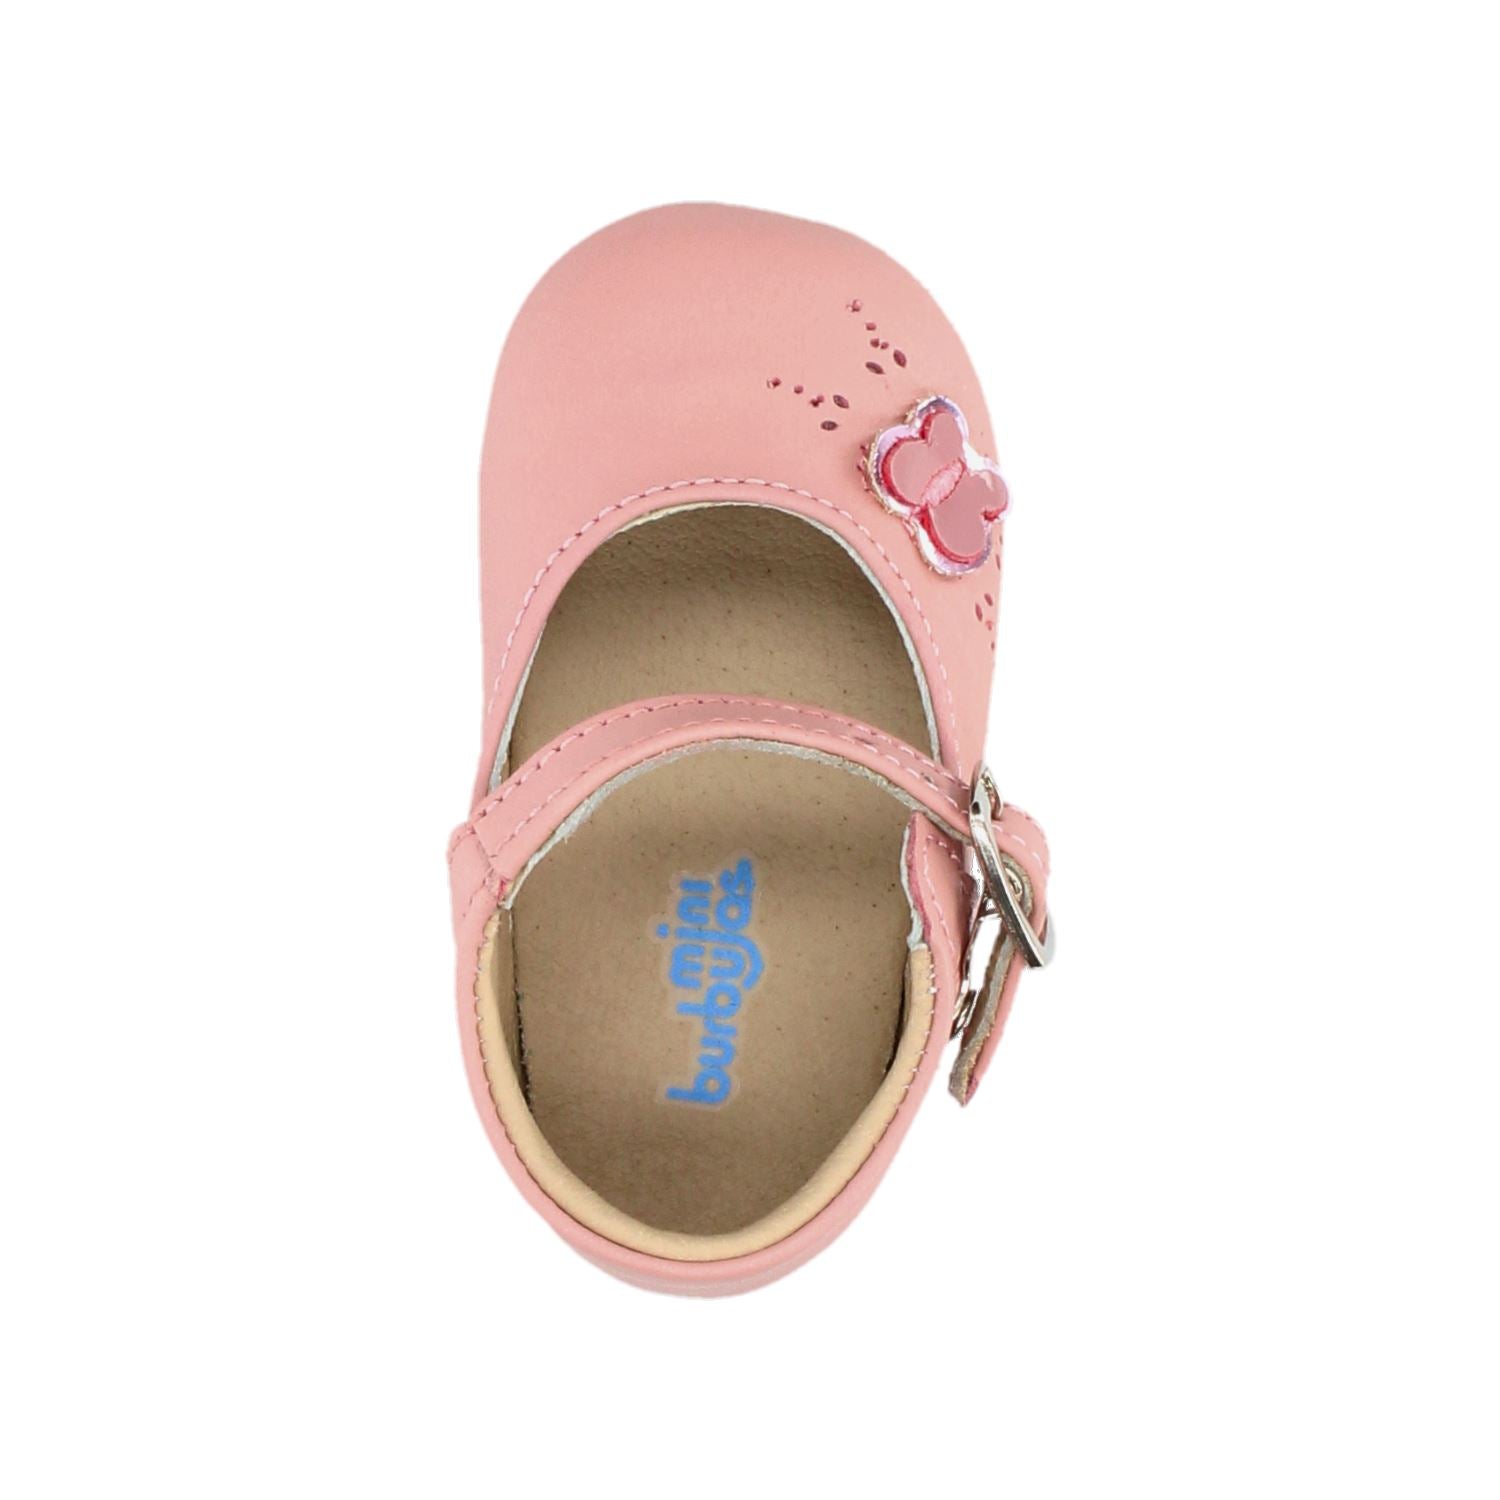 Zapato Casual Mini burbujas para Niña 23-387-N14 Rosa [MNB206] División_Calzado MINI BURBUJAS 